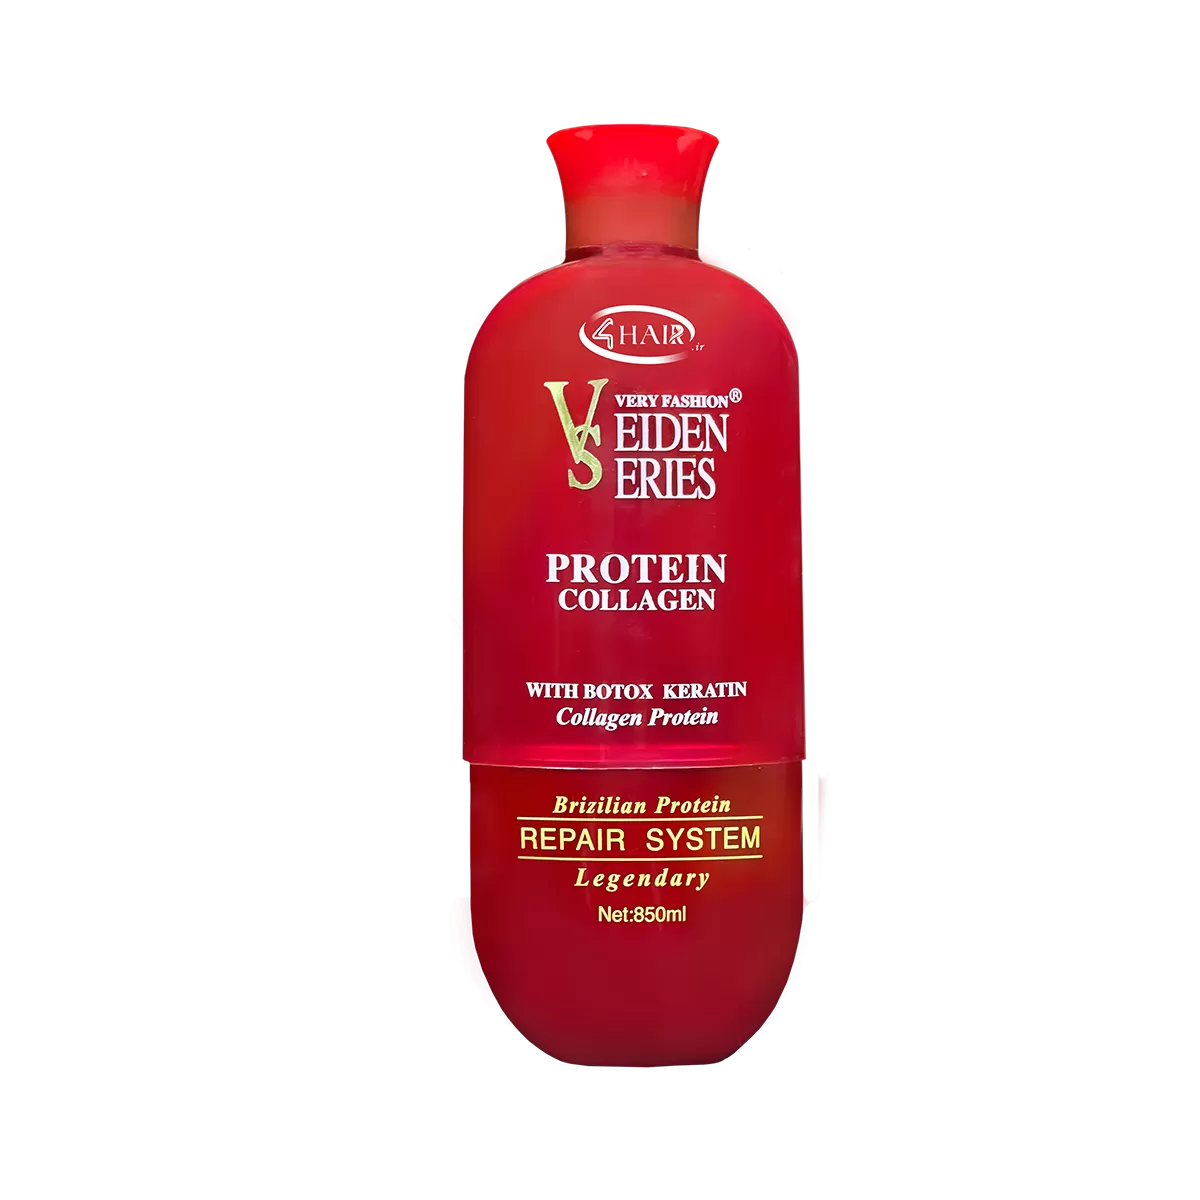 پروتئین مو ویدن سریس اصل ( 30% تخفیف + آموزش ) 